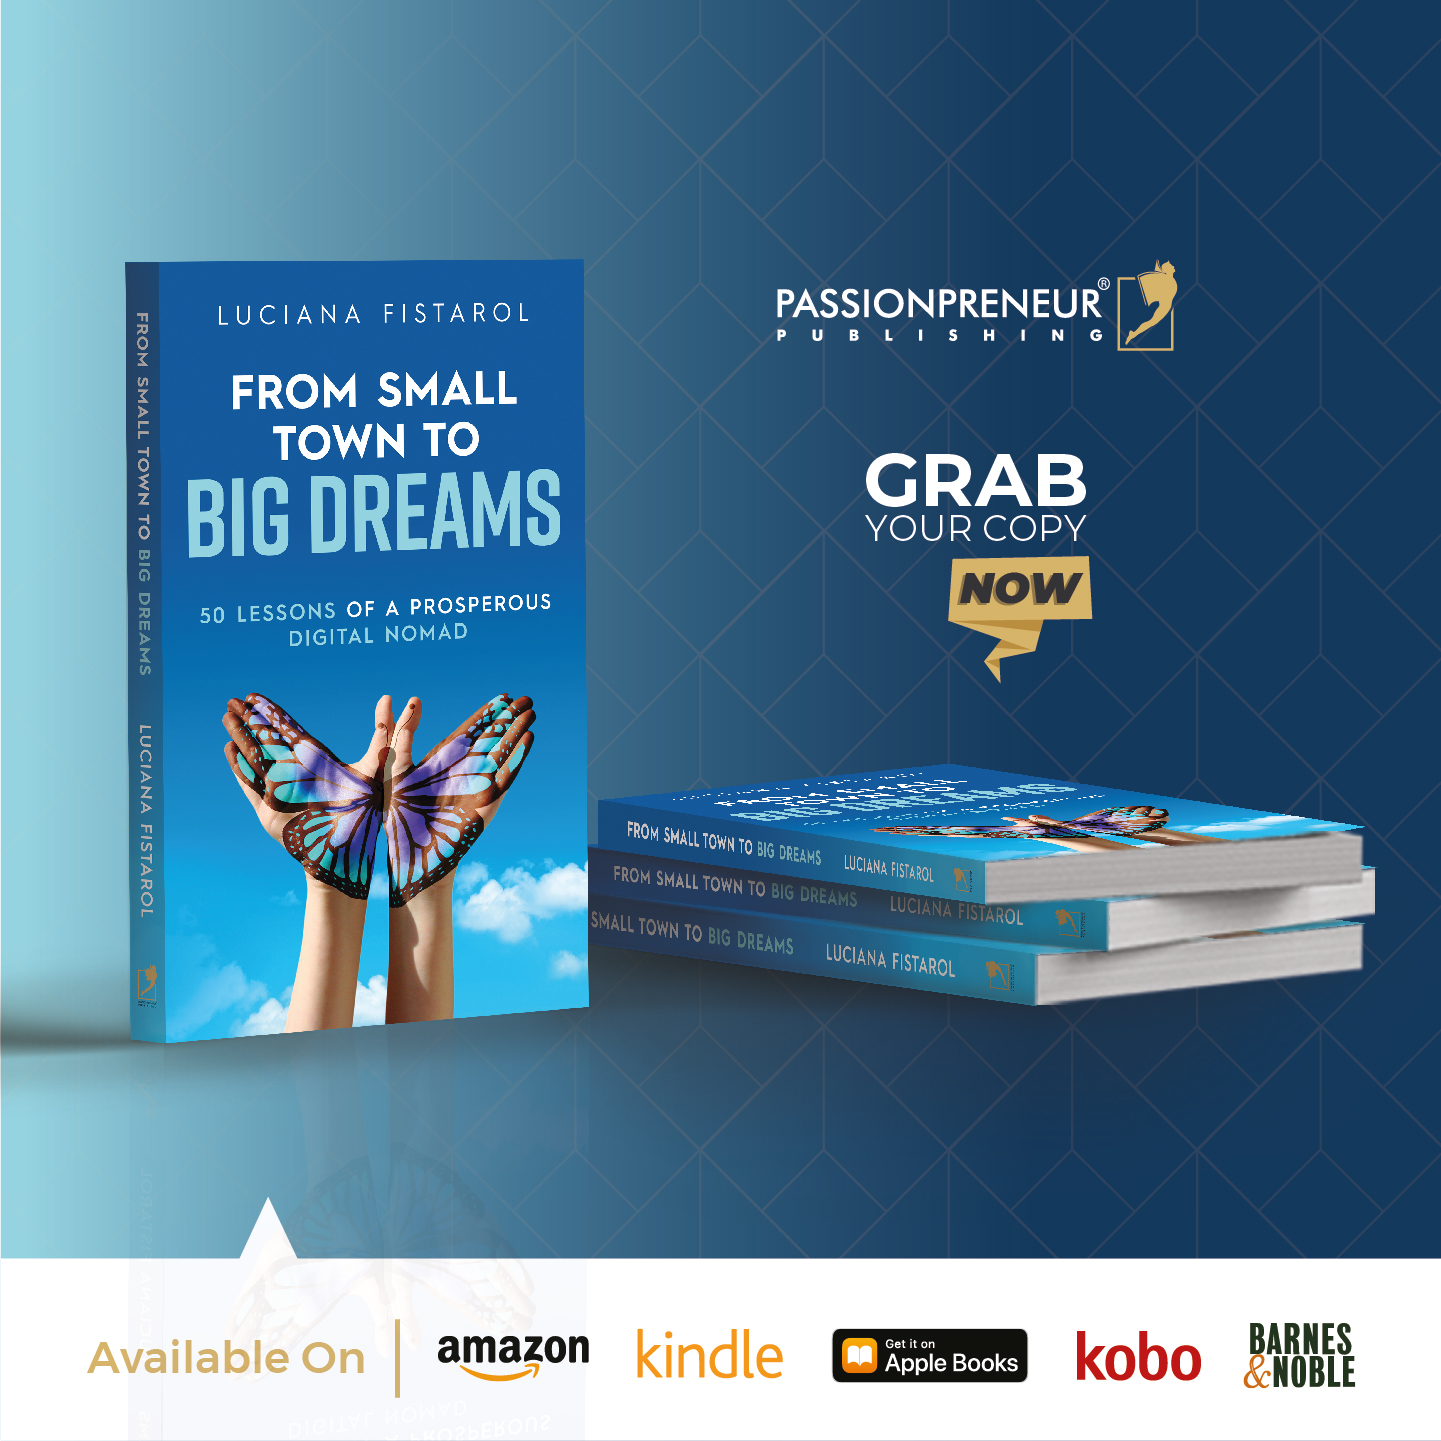 Nhà xuất bản Passionpreneur thông báo phát hành toàn cầu cuốn sách Từ Thị Trấn Nhỏ đến Ước Mơ Lớn của Luciana Fistarol